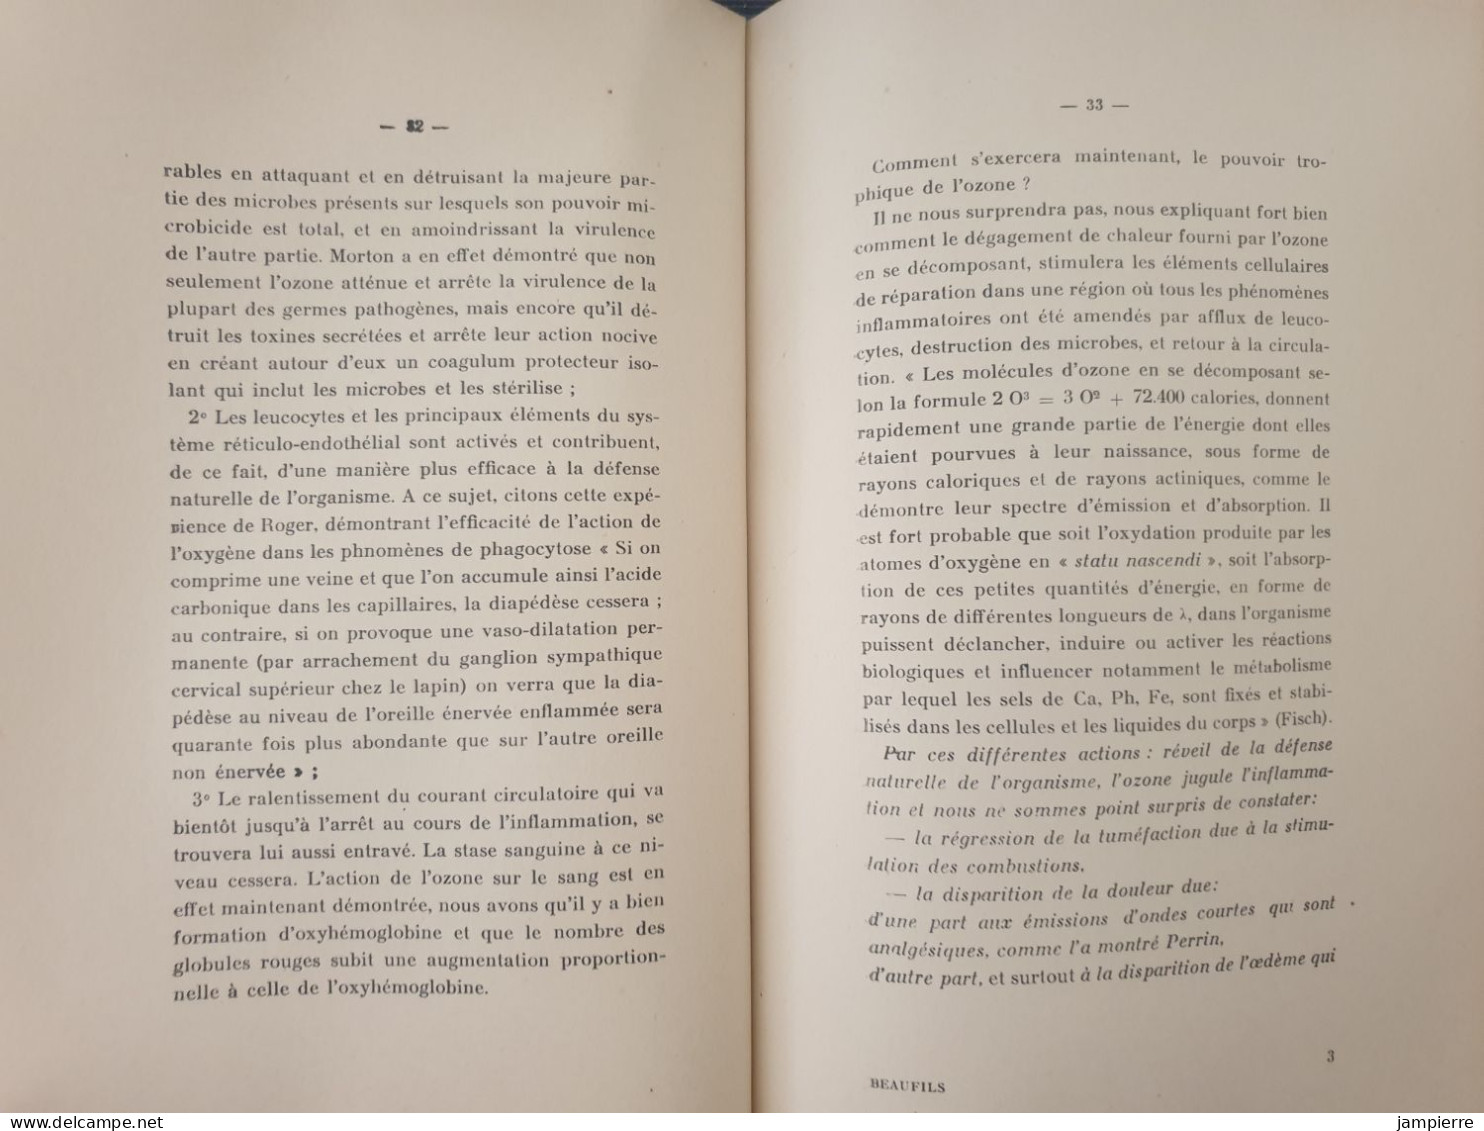 L'Ozonothérapie En Stomatologie - Docteur Charles Beaufils, Lyon, 1938 - Gezondheid